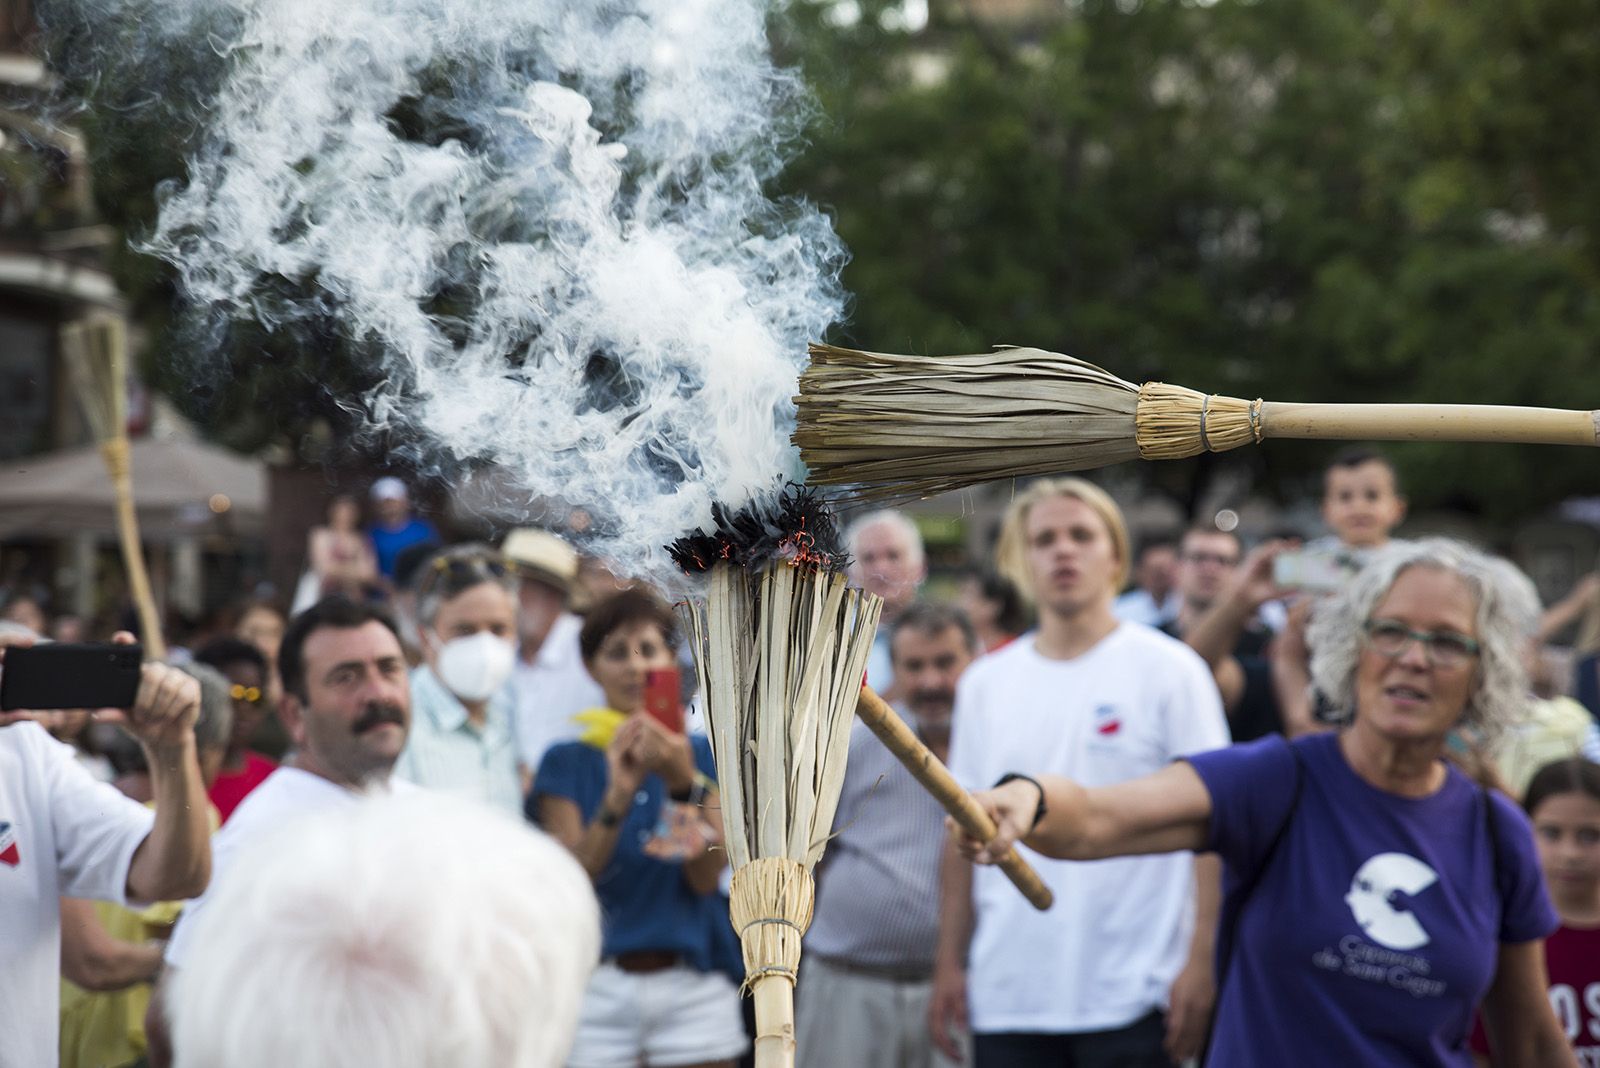 Rebuda de la Flama del Canigó amb Ball d'homenatge, lectura del manifest i actuacions de cultura popular. FOTO: Bernat Millet.